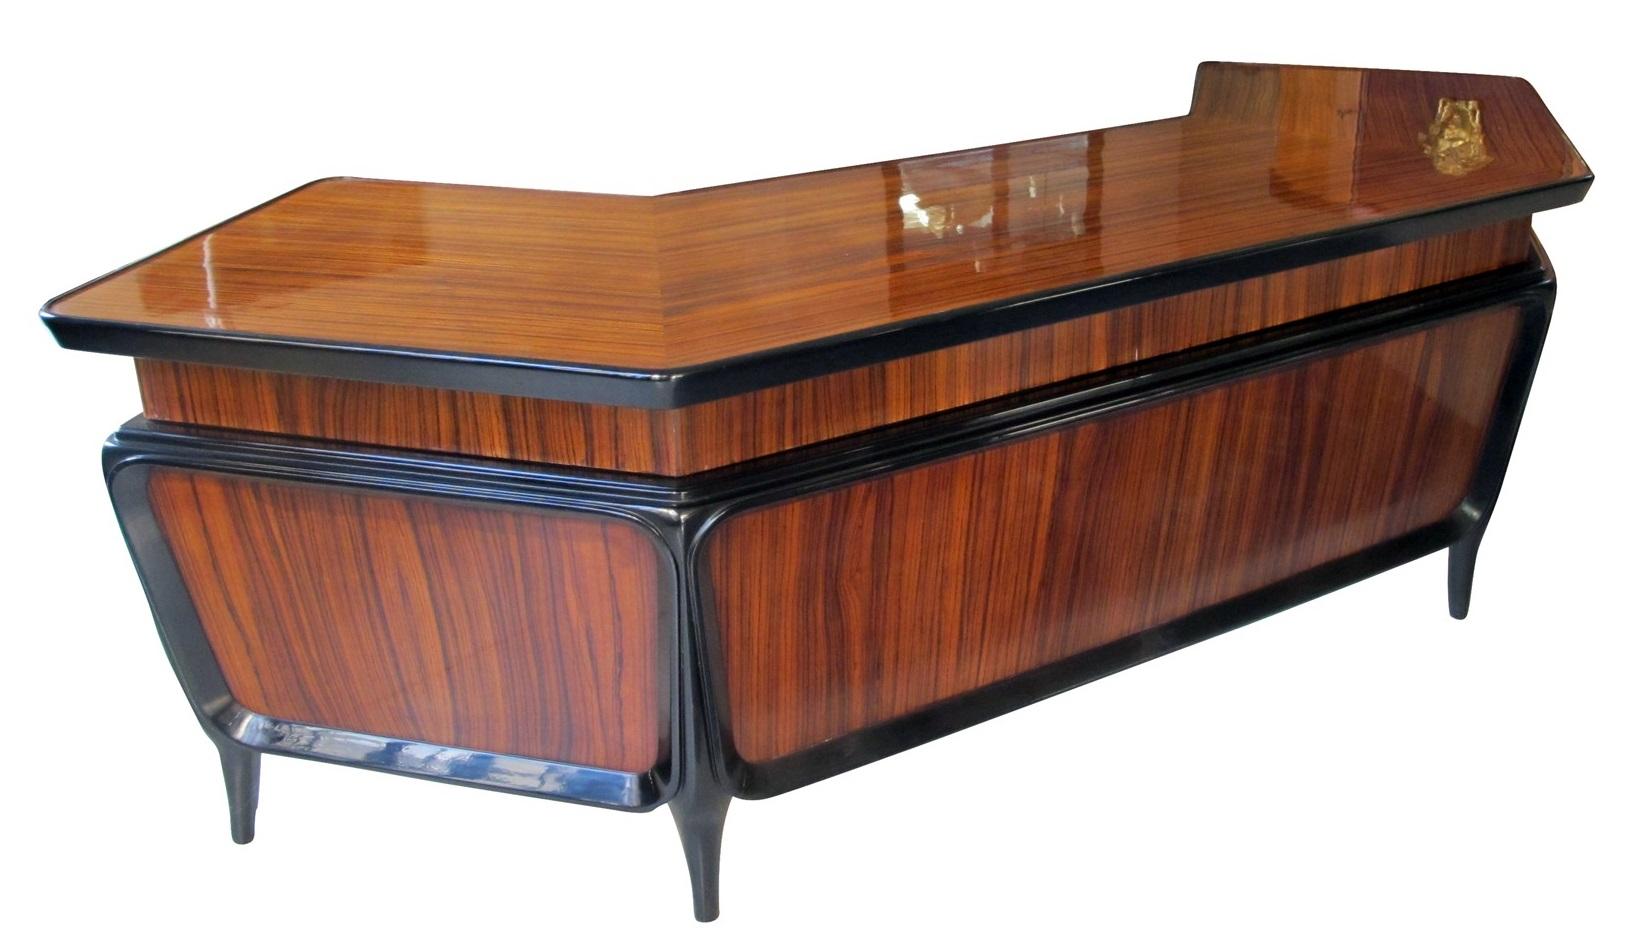 Schreibtisch
Jahr 1930
Französisch
Holz ist Zebrano
Oberfläche: Polyurethan-Lack
Er ist ein eleganter und anspruchsvoller Traumschreibtisch. Er hat eine große Arbeitsfläche.
Die Qualität der Möbel und das verwendete exotische Holz machen sie